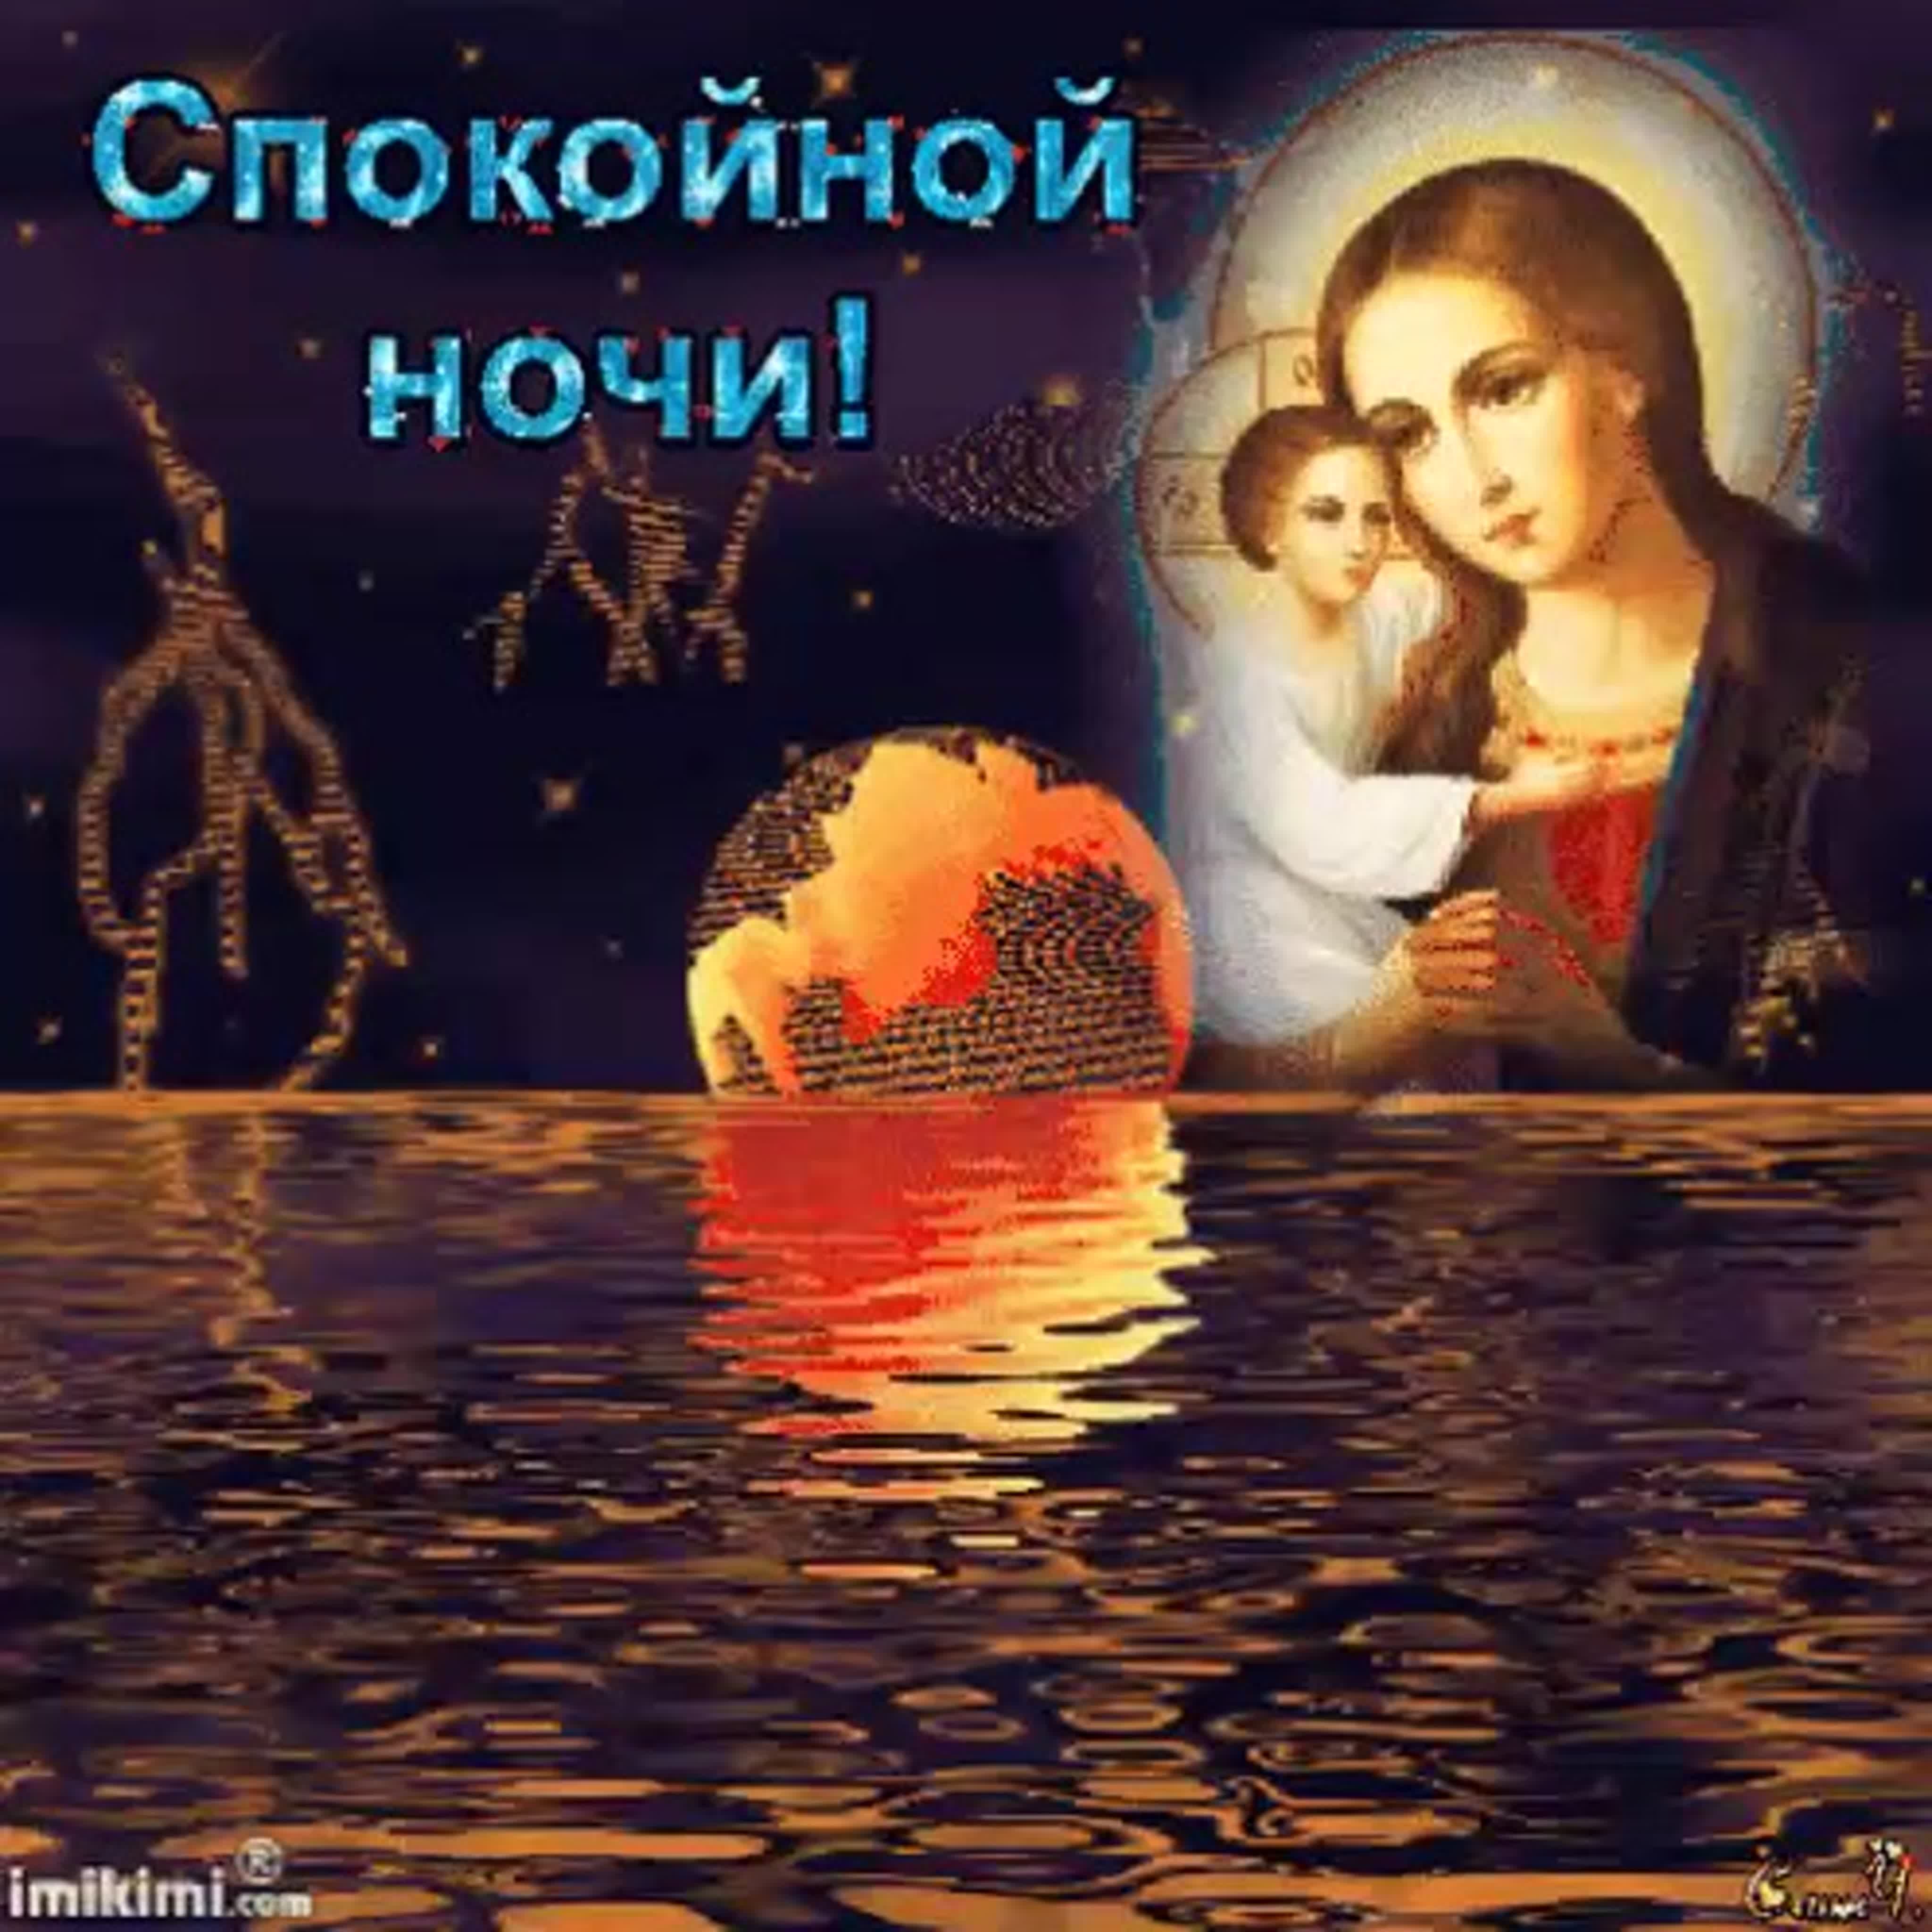 Благословенное пожелание доброй ночи. Православные пожелания спокойной ночи. Доброй ночи православные пожелания. Доброй ночи ангела ко сну. Божественные пожелания спокойной ночи.